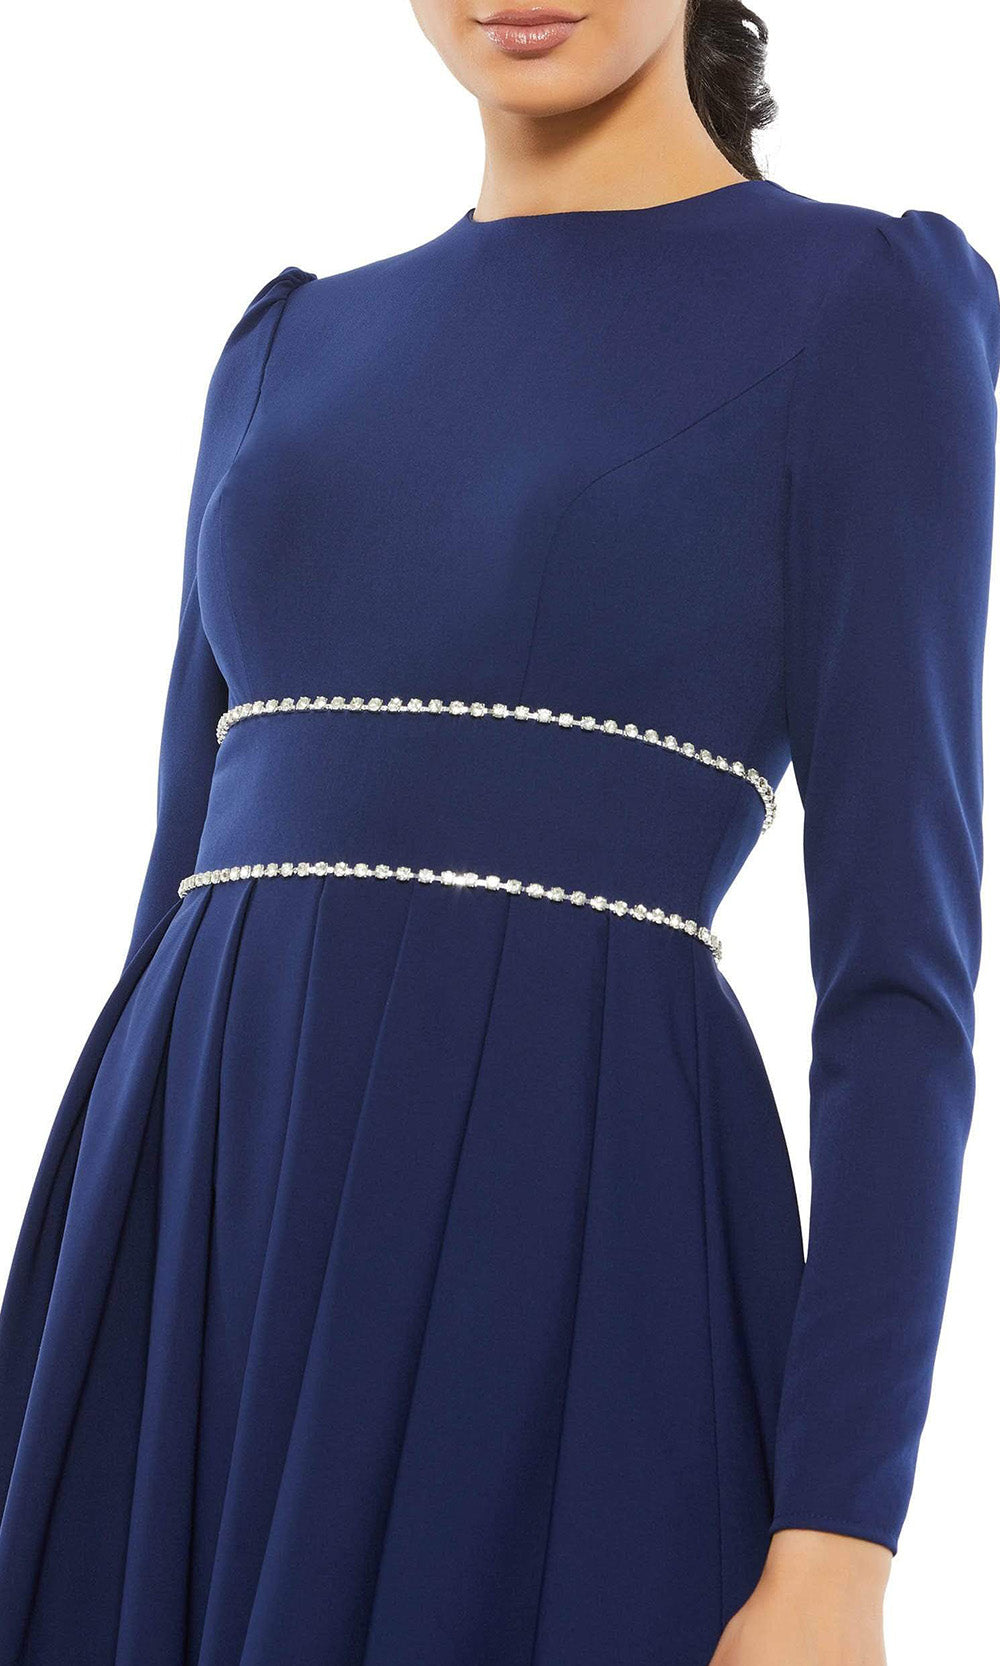 Ieena Duggal - 55705 Jewel Trimmed Waist Gown In Blue